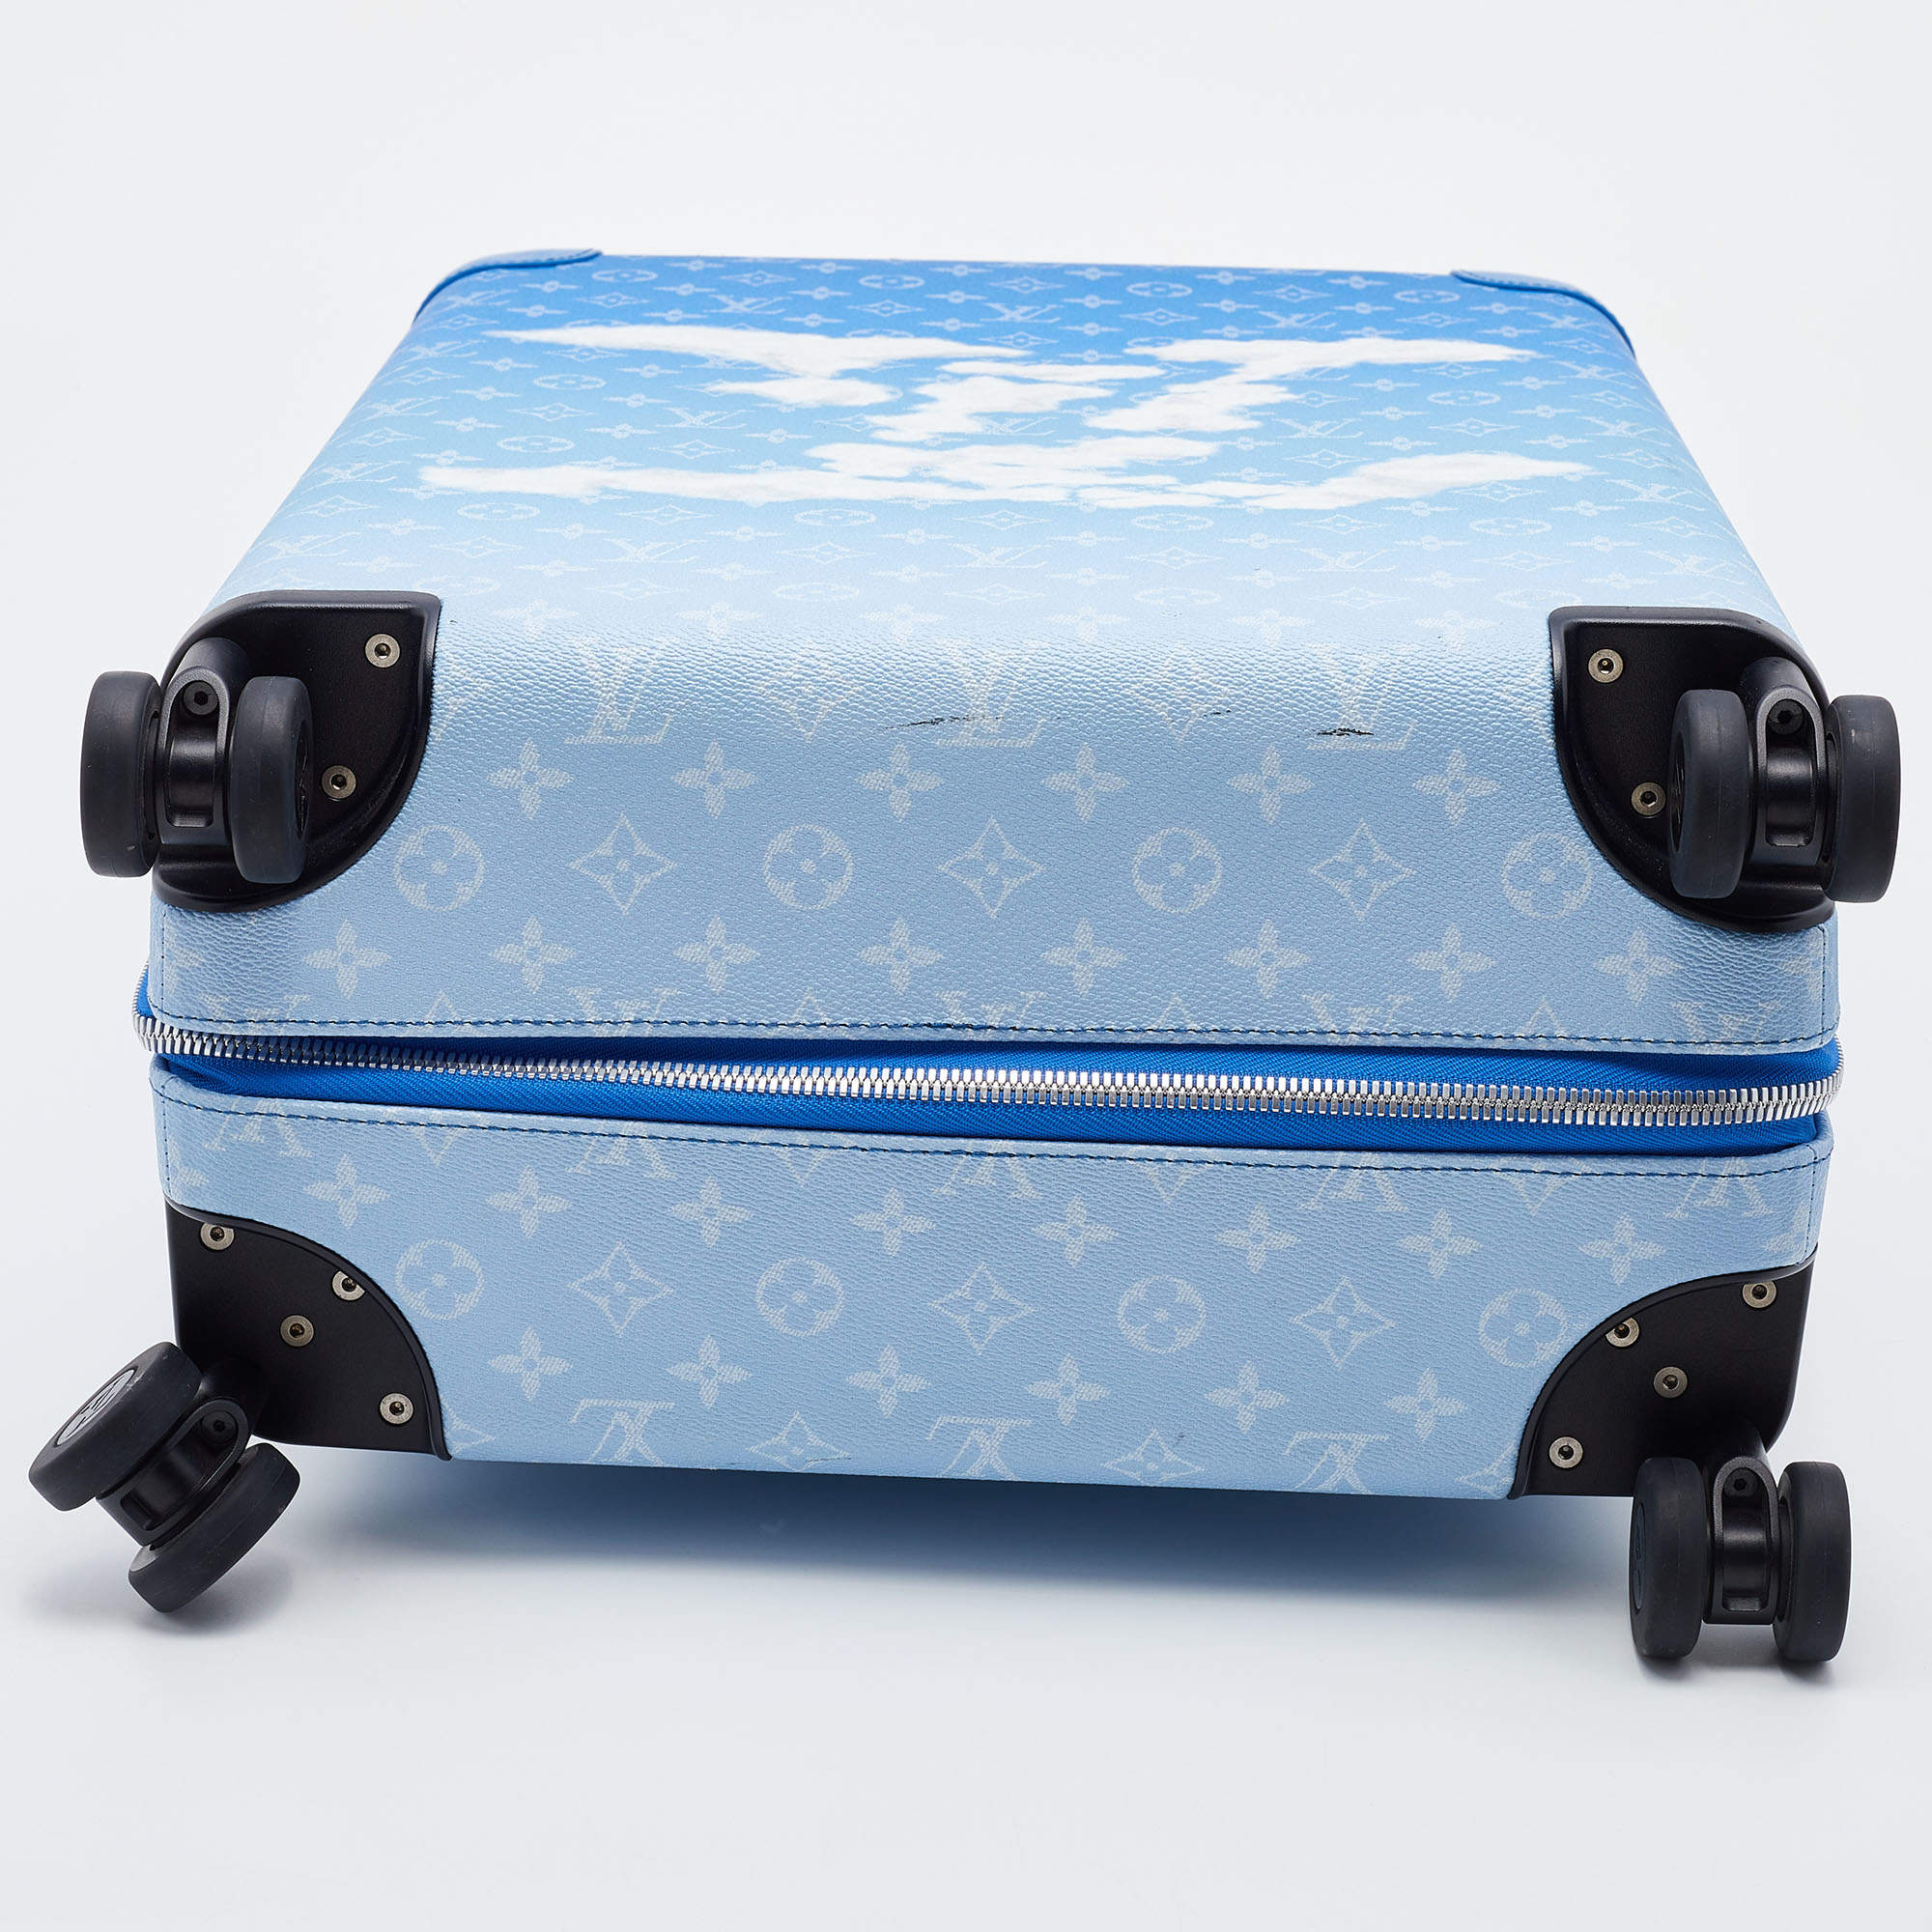 Louis Vuitton Monogram Clouds Canvas Horizon 55 Suitcase Louis Vuitton